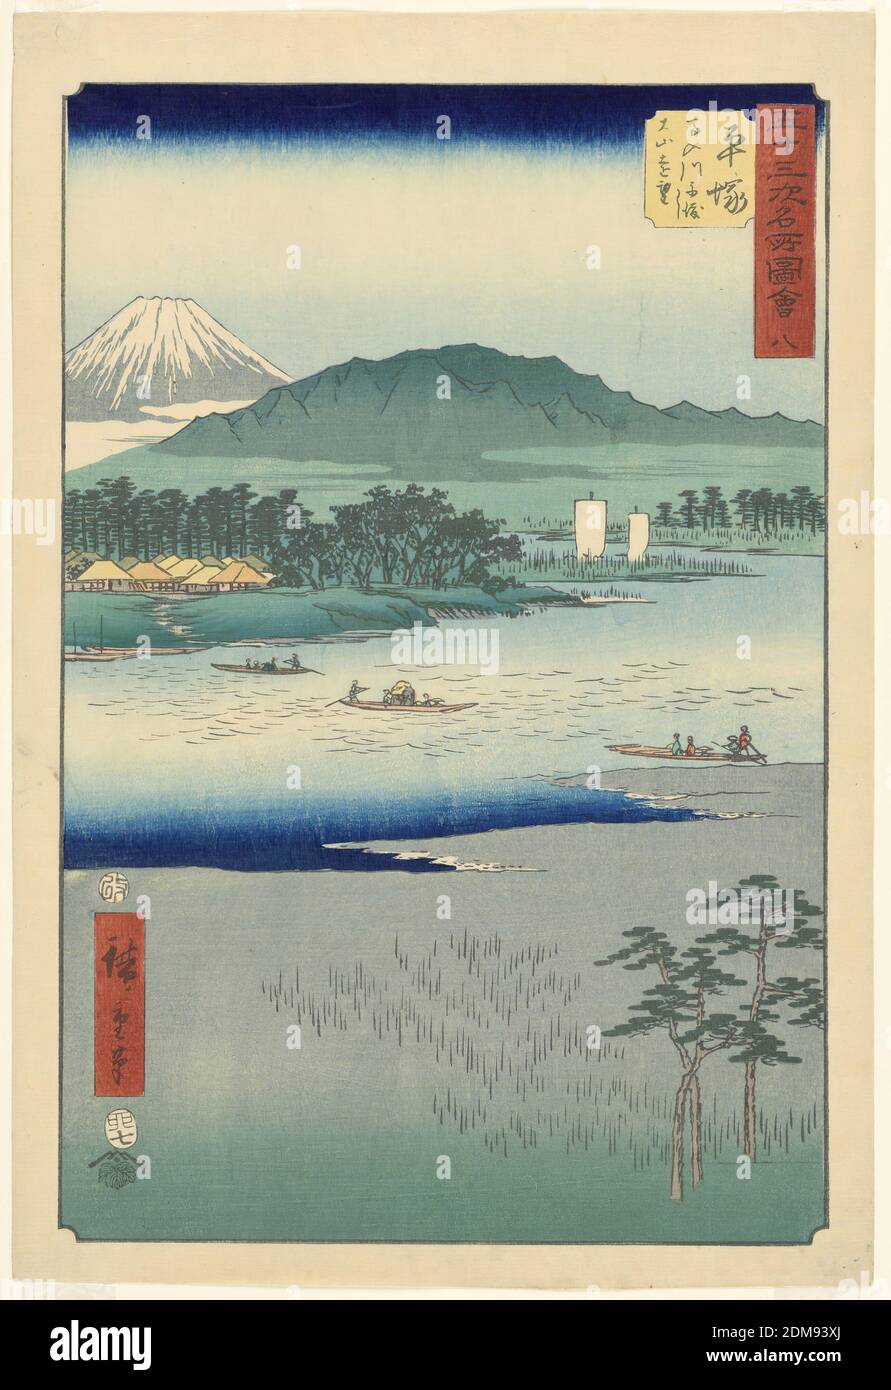 River Highway, Ando Hiroshige, japanisch, 1797–1858, Holzschnitt in farbiger Tinte auf Papier, Wasser war die Hauptverkehrsstraße während dieser Zeit. Drei Boote voller Menschen reisen von Land zu Land hin und her. Im Hintergrund sind zwei größere Schiffe zu sehen, die stromabwärts segeln. Ein Dorf liegt am Rande eines Waldes mit Mt. Fuji steht in der Ferne. Der Vordergrund ist neutral, mit abstrakten Linien, die auf einen Sumpf mit hohen Gräsern hindeuten., Japan, 1797-1858, Landscapes, Print Stockfoto